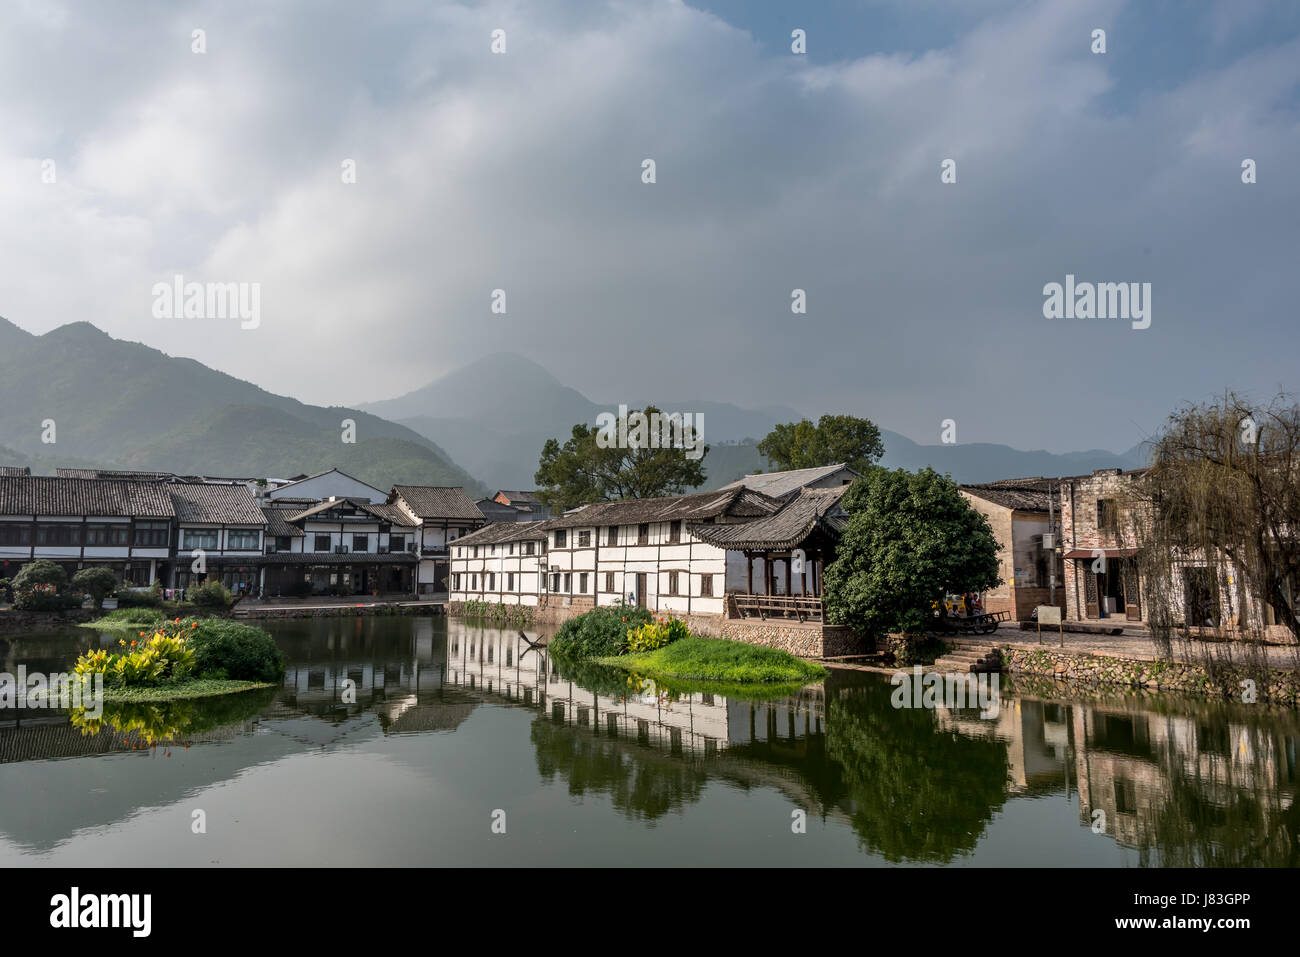 Cangpo antico villaggio w/ riflessione sull'acqua. Villaggi di Yongjia County sono noti per la loro longevità. La provincia di Zhejiang, Cina, vicino al fiume Nanxi. Foto Stock